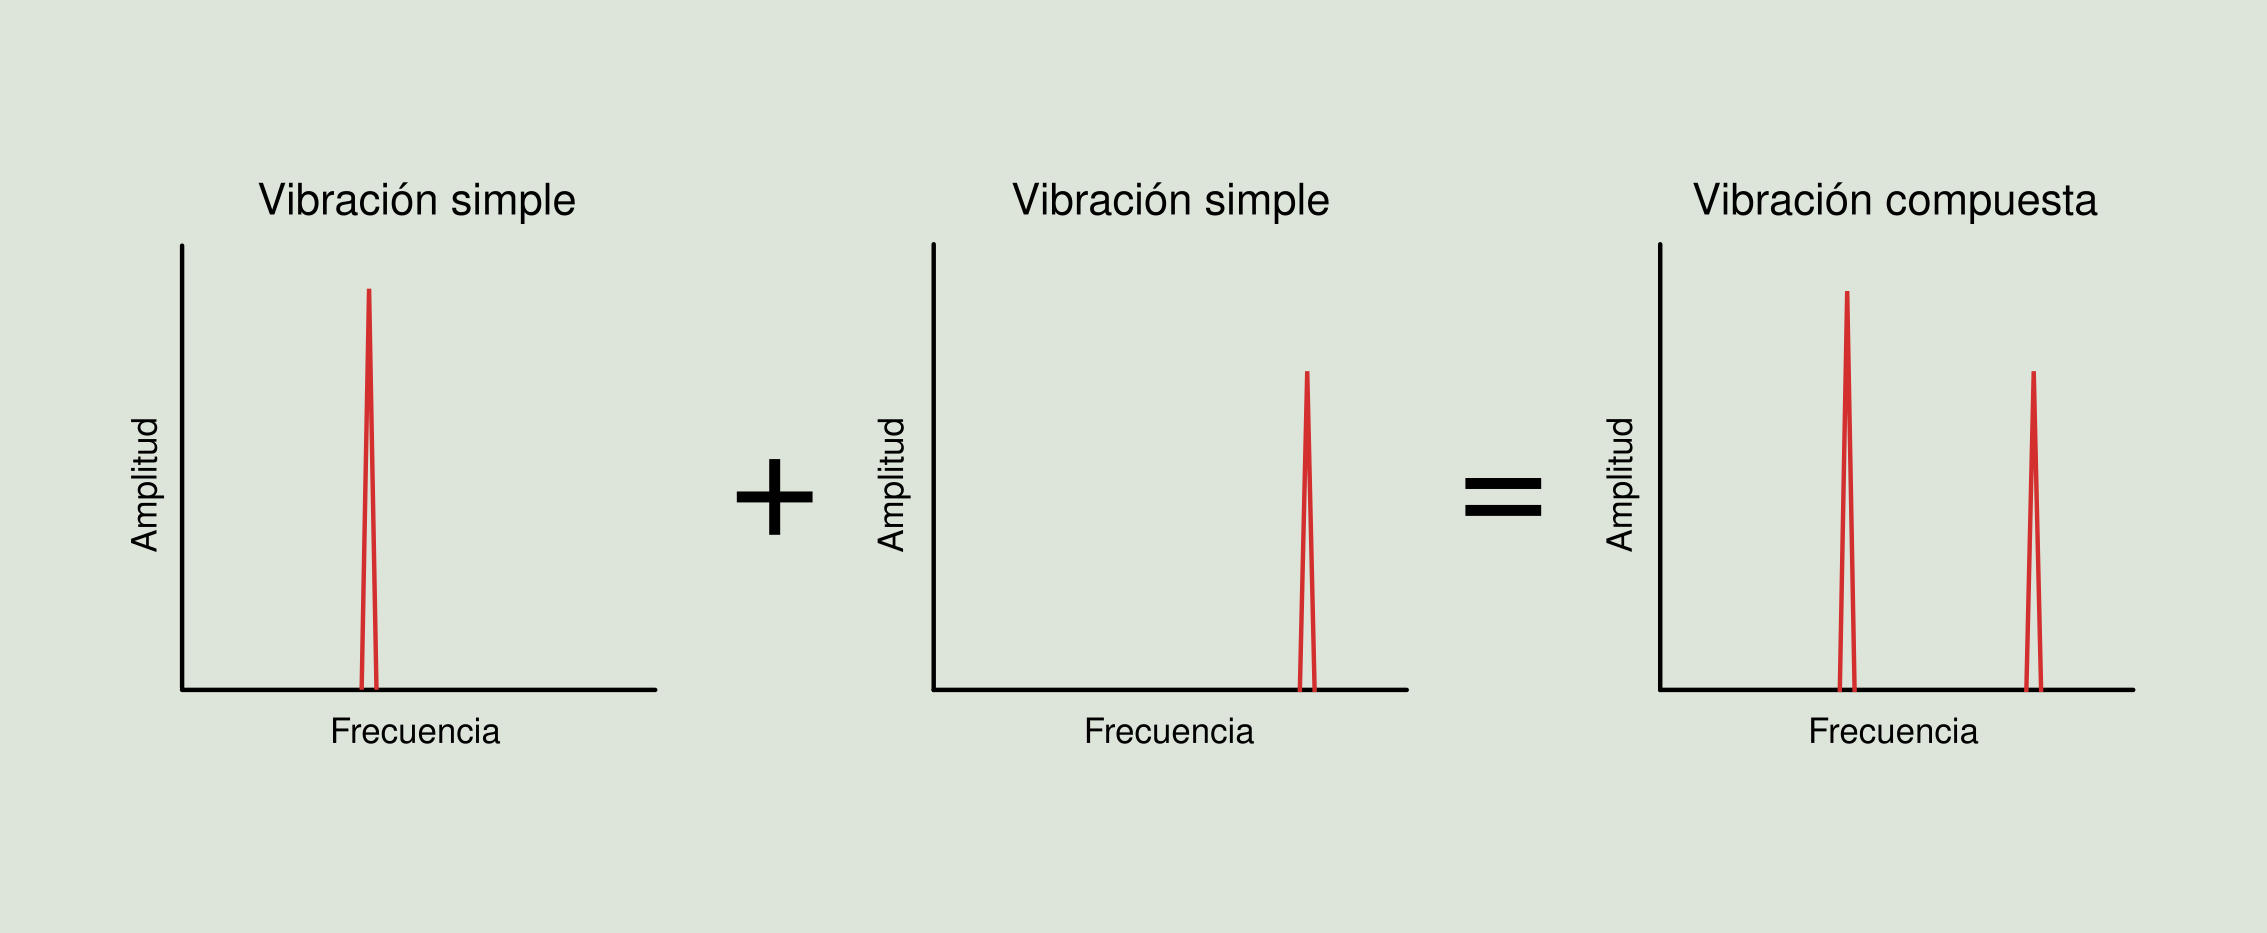 Figura 2.10: Suma de vibraciones simples en el dominio de la frecuencia